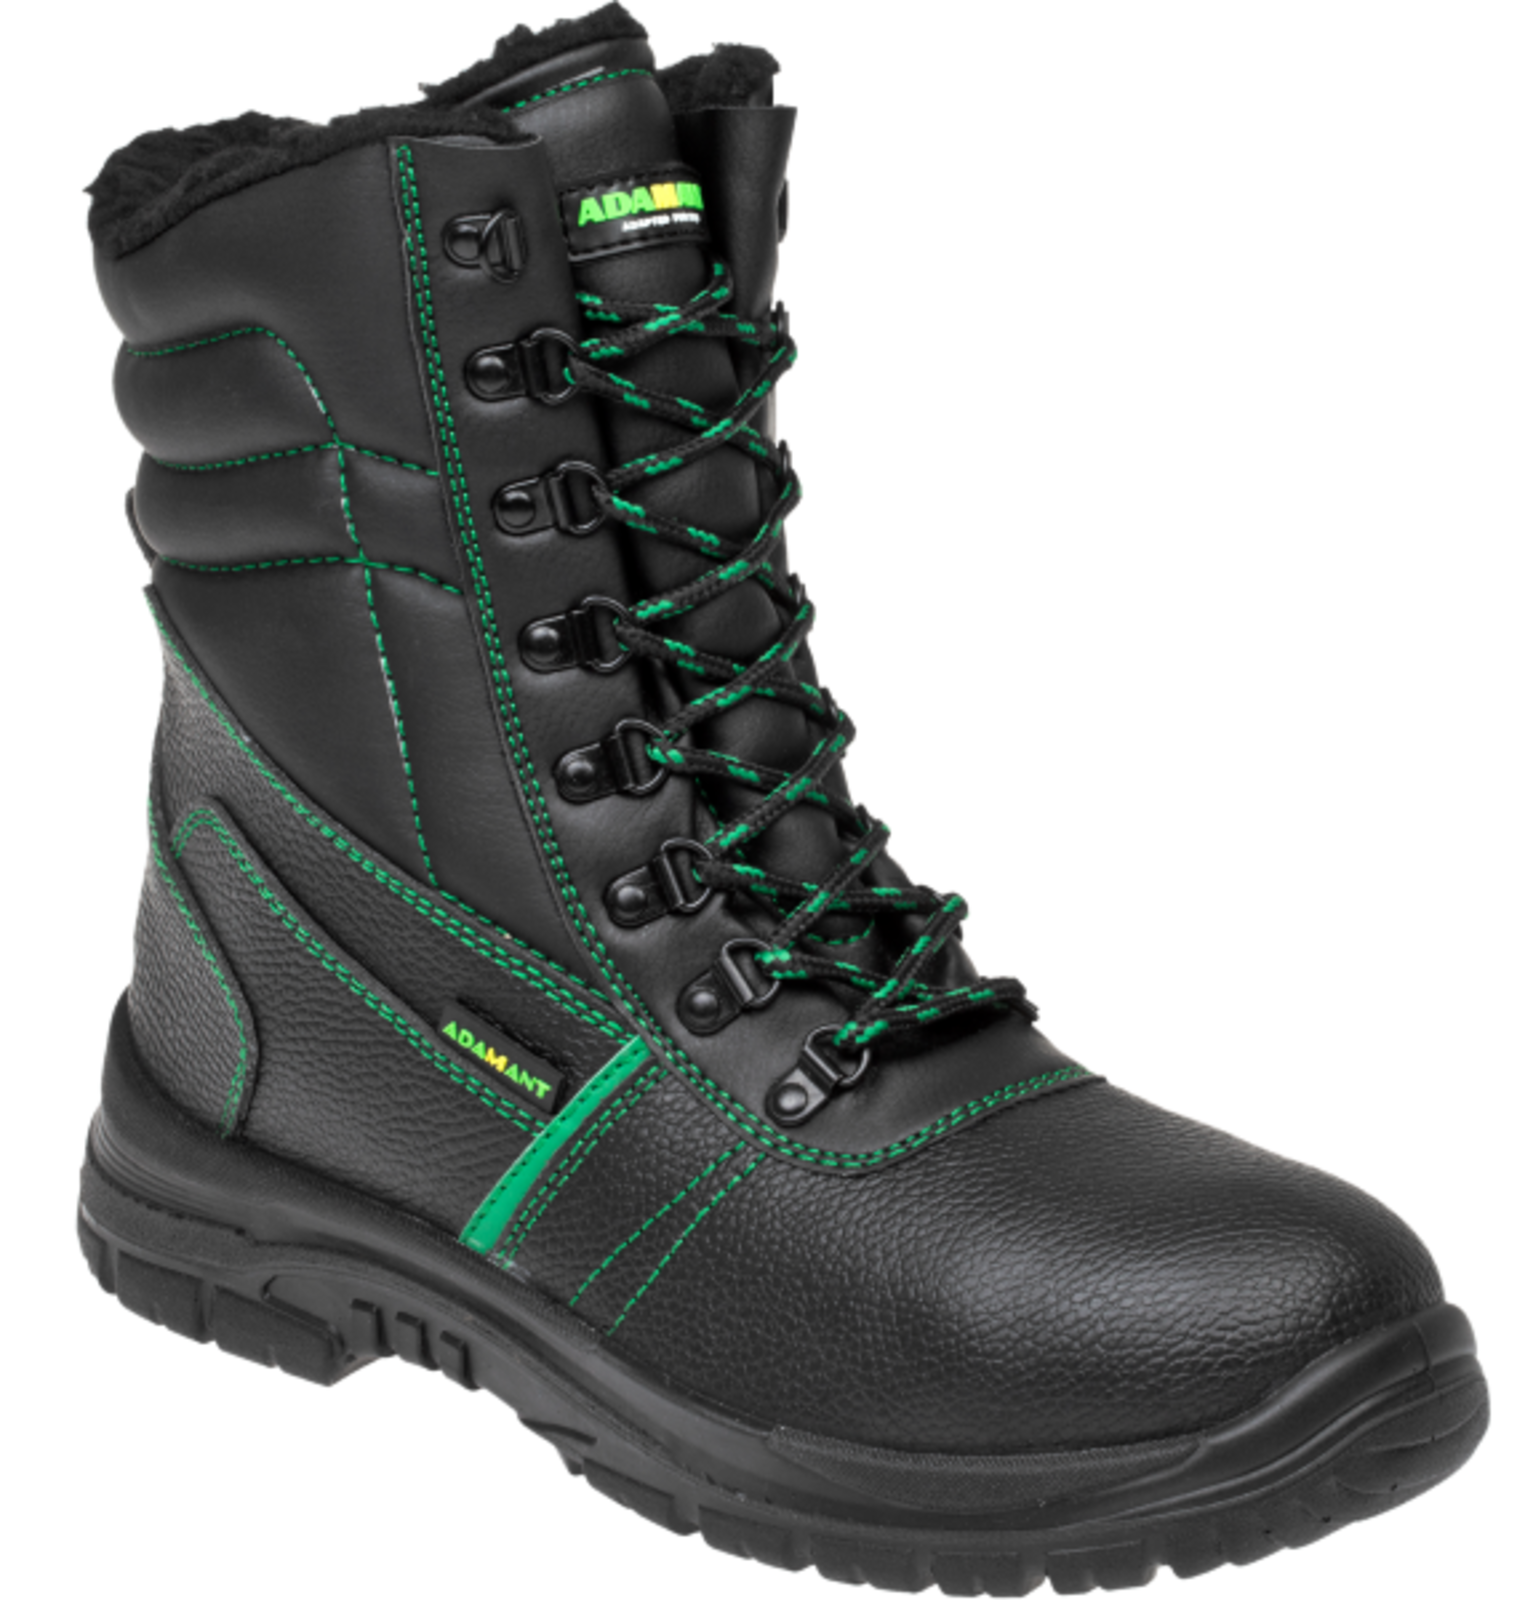 Zimná vysoká bezpečnostná obuv Adamant Classic S3 - veľkosť: 45, farba: čierna